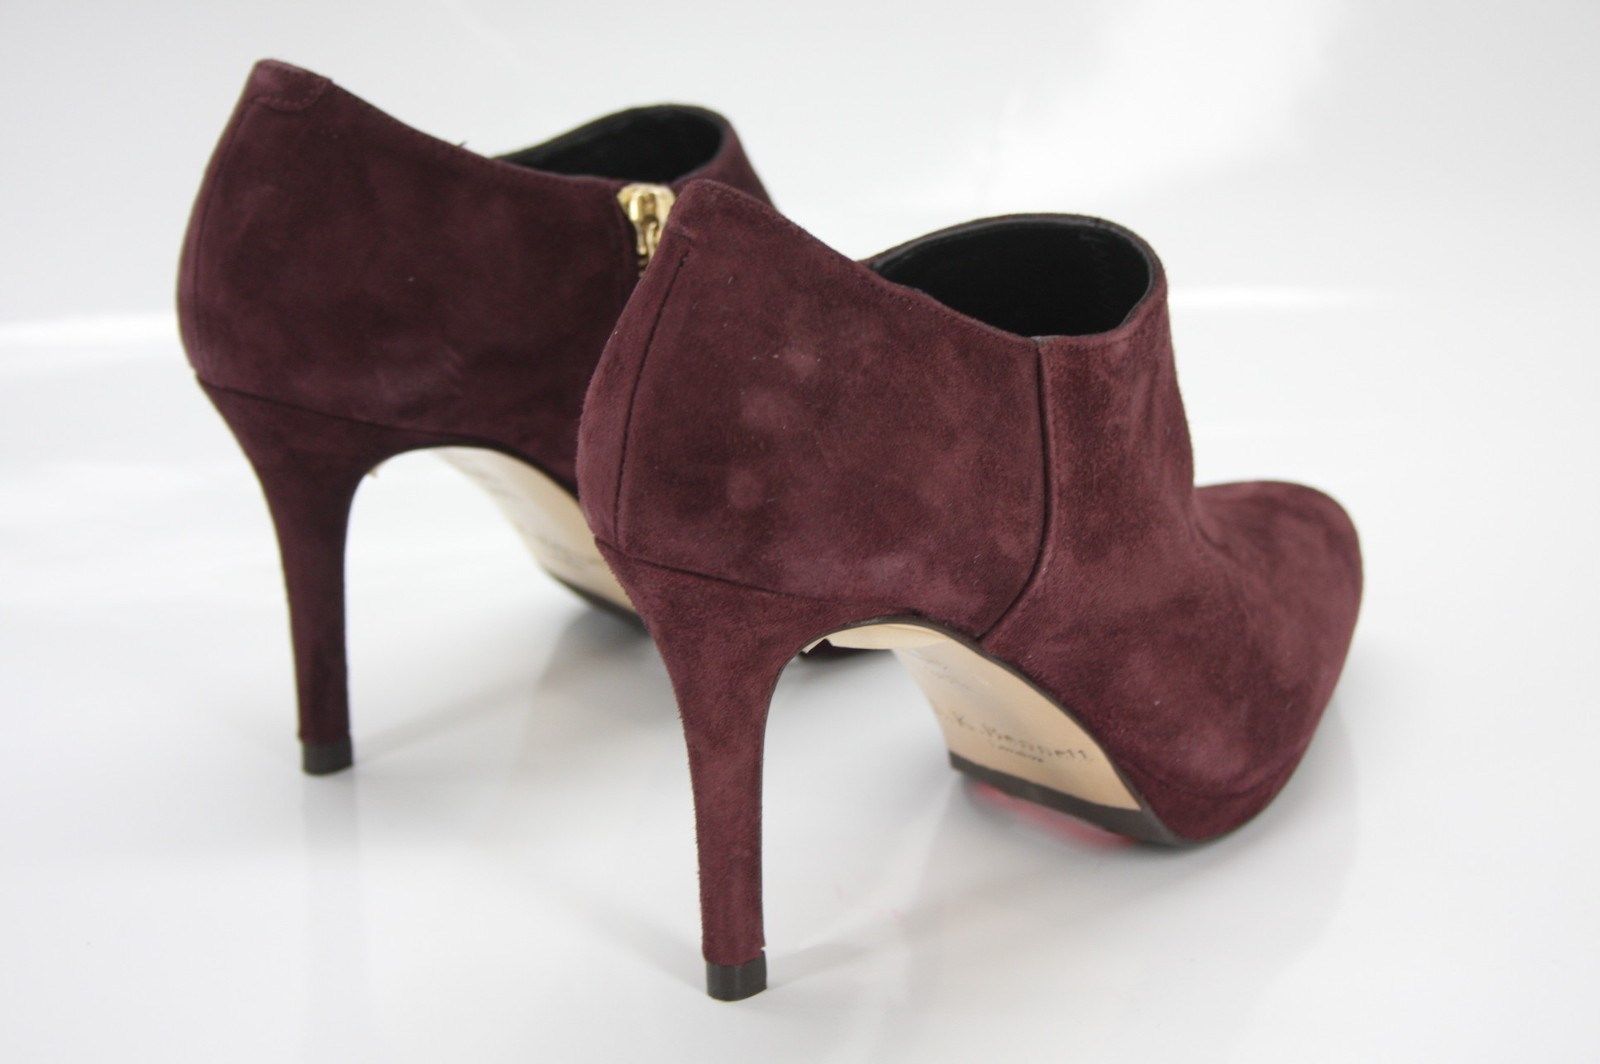 LK Bennett Wine Suede Doris High Heels Ankle booties Size 36.5 New $395 Women's